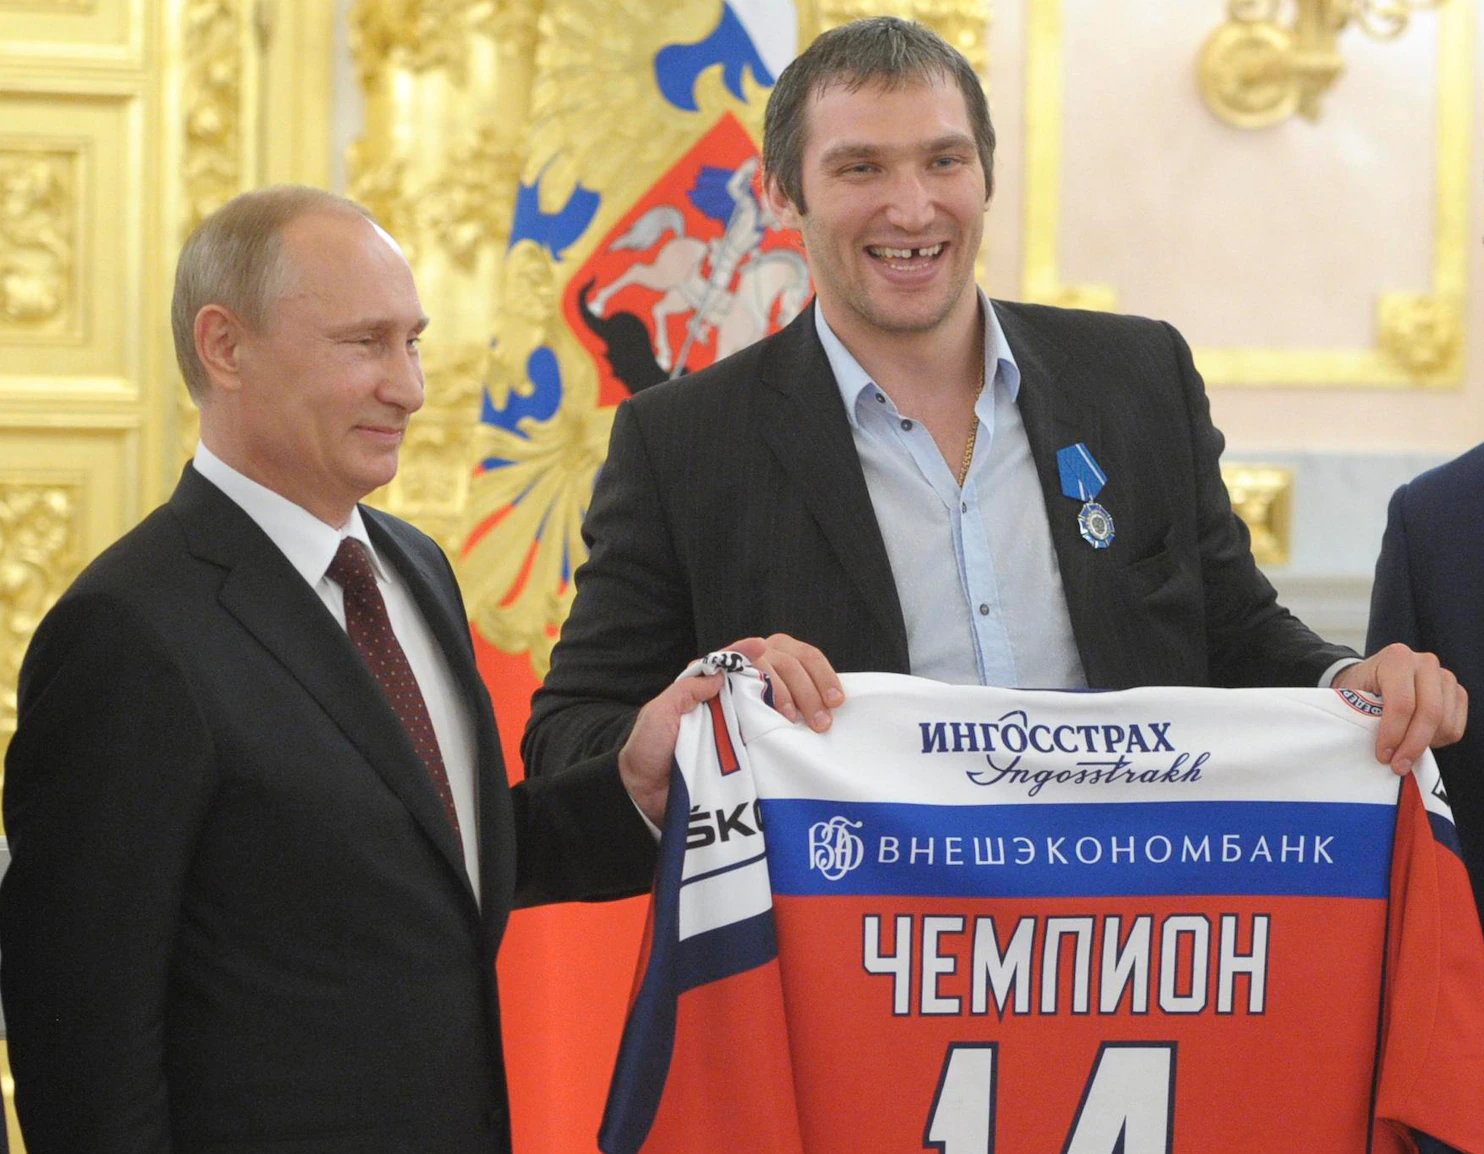 Alexander Ovechkin es quizá el deportista más famoso y querido de Rusia y siempre ha sido un gran fan del presidente Vladimir Putin